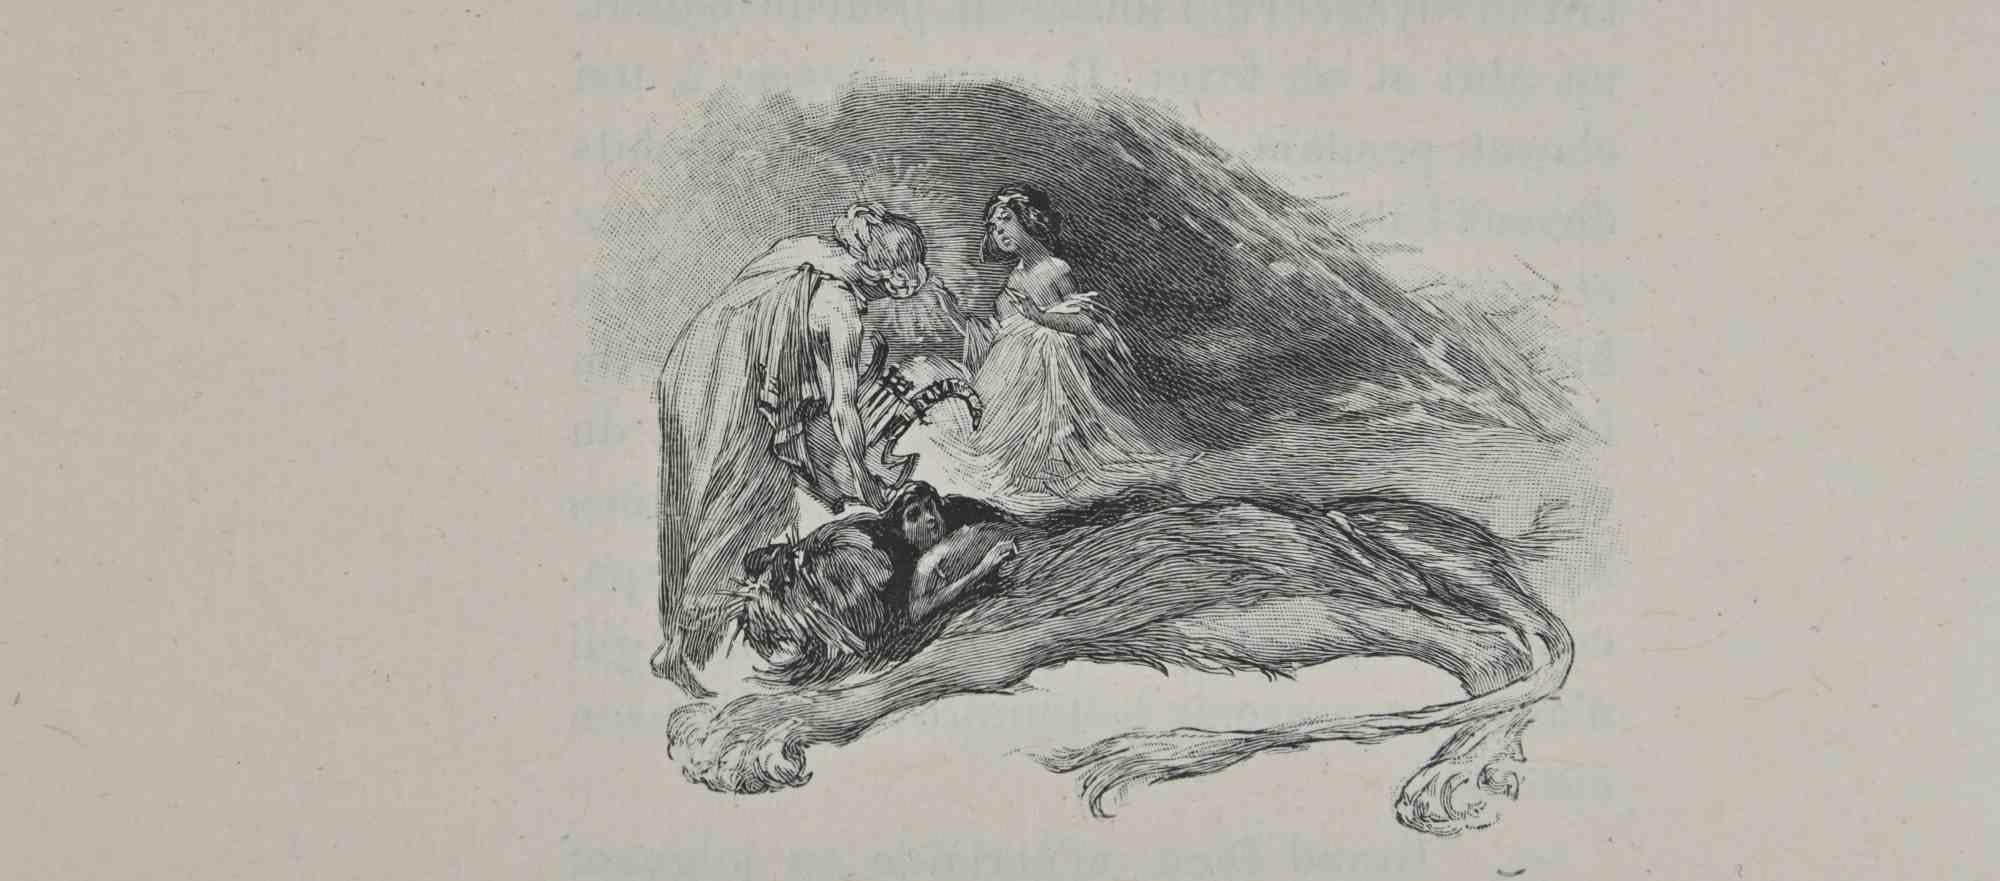 Fairy  and Lion - Lithograph by Hégésippe Moreau - 1838